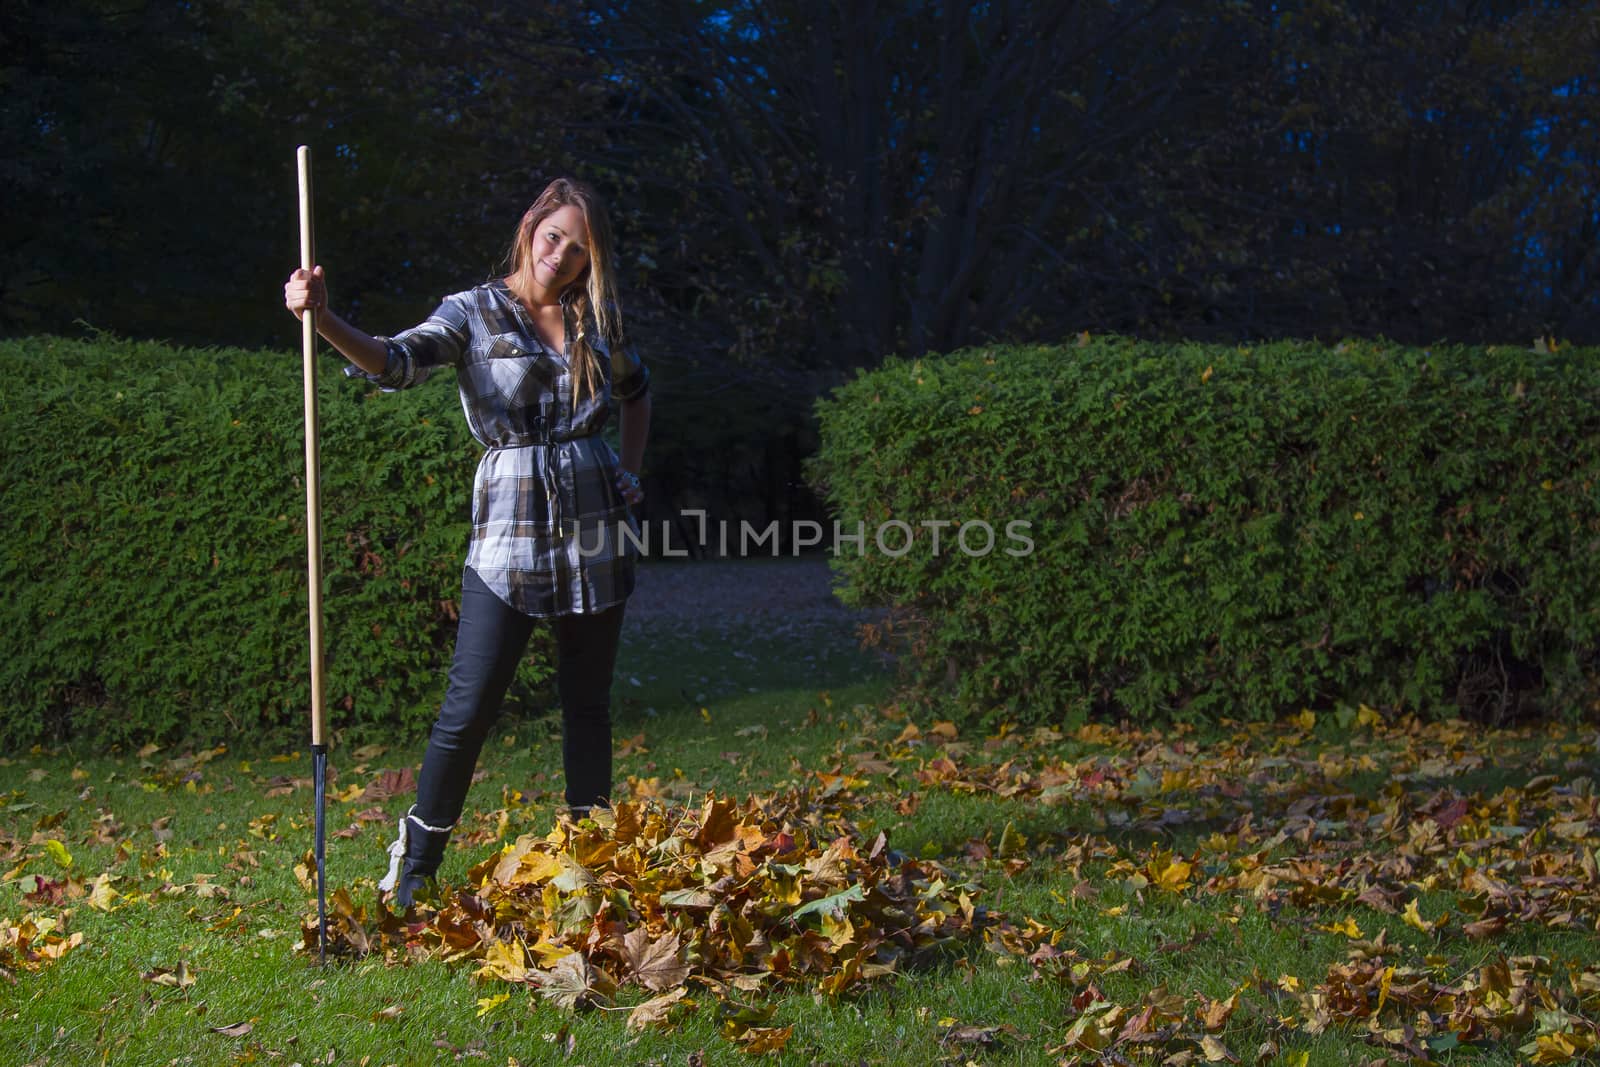 young woman in her twenties, raking leaves